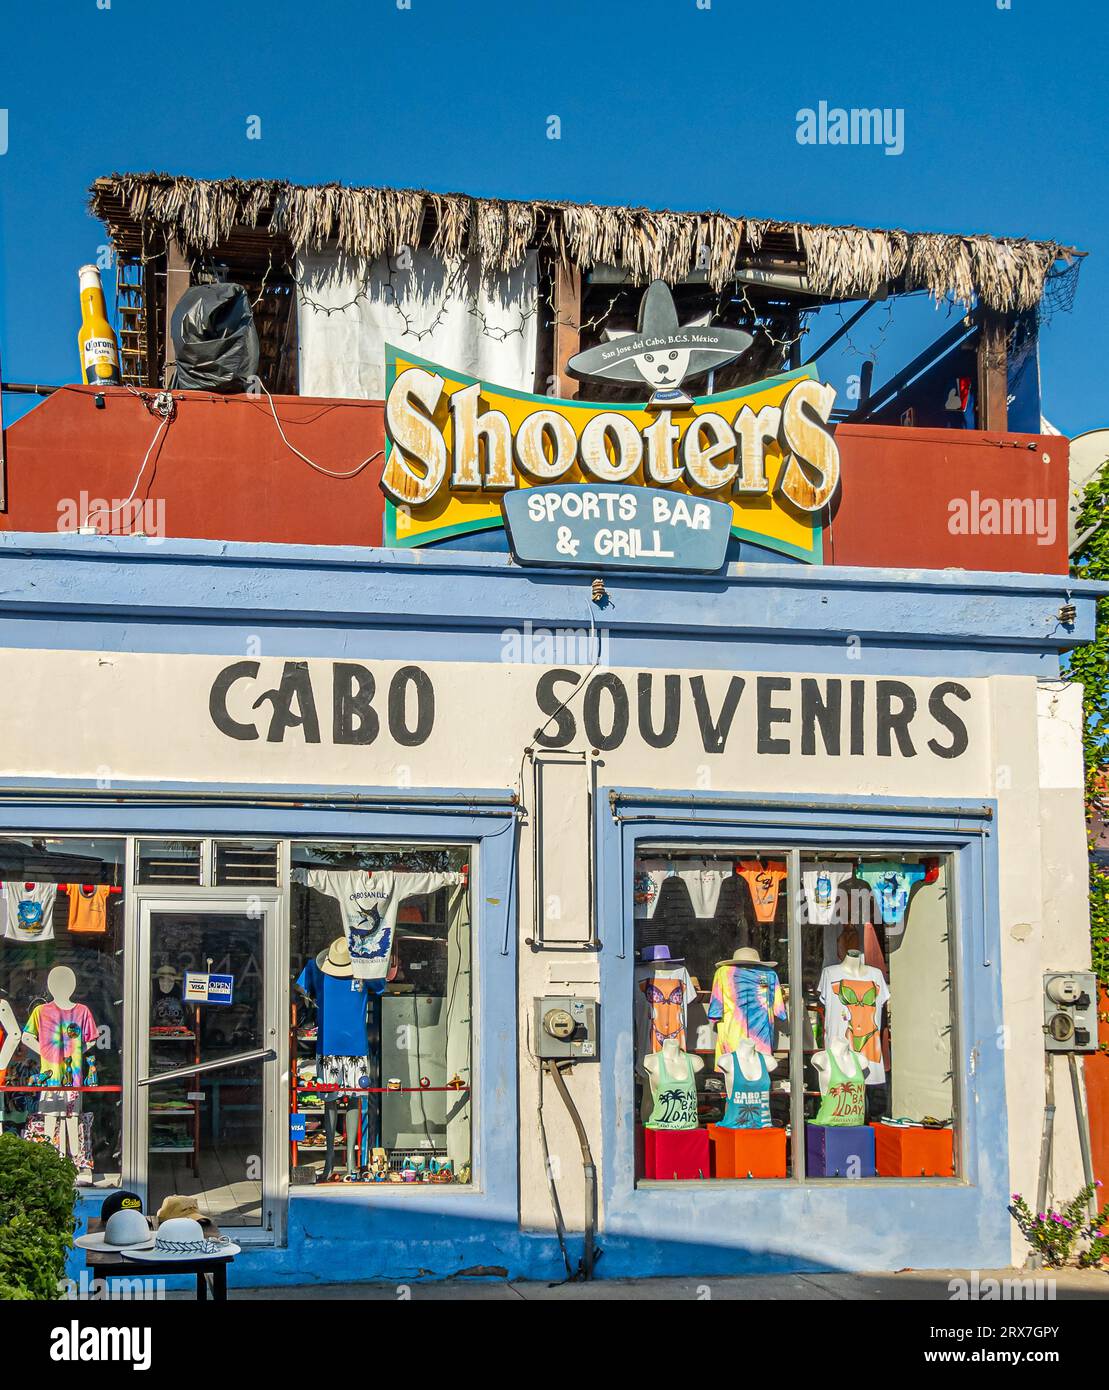 San Jose del Cabo Centro, Mexique - 16 juillet 2023 : fermeture de façade colorée de la boutique Cabo souvenirs avec sur le dessus Shooters bar sportif et grill sous bleu Banque D'Images